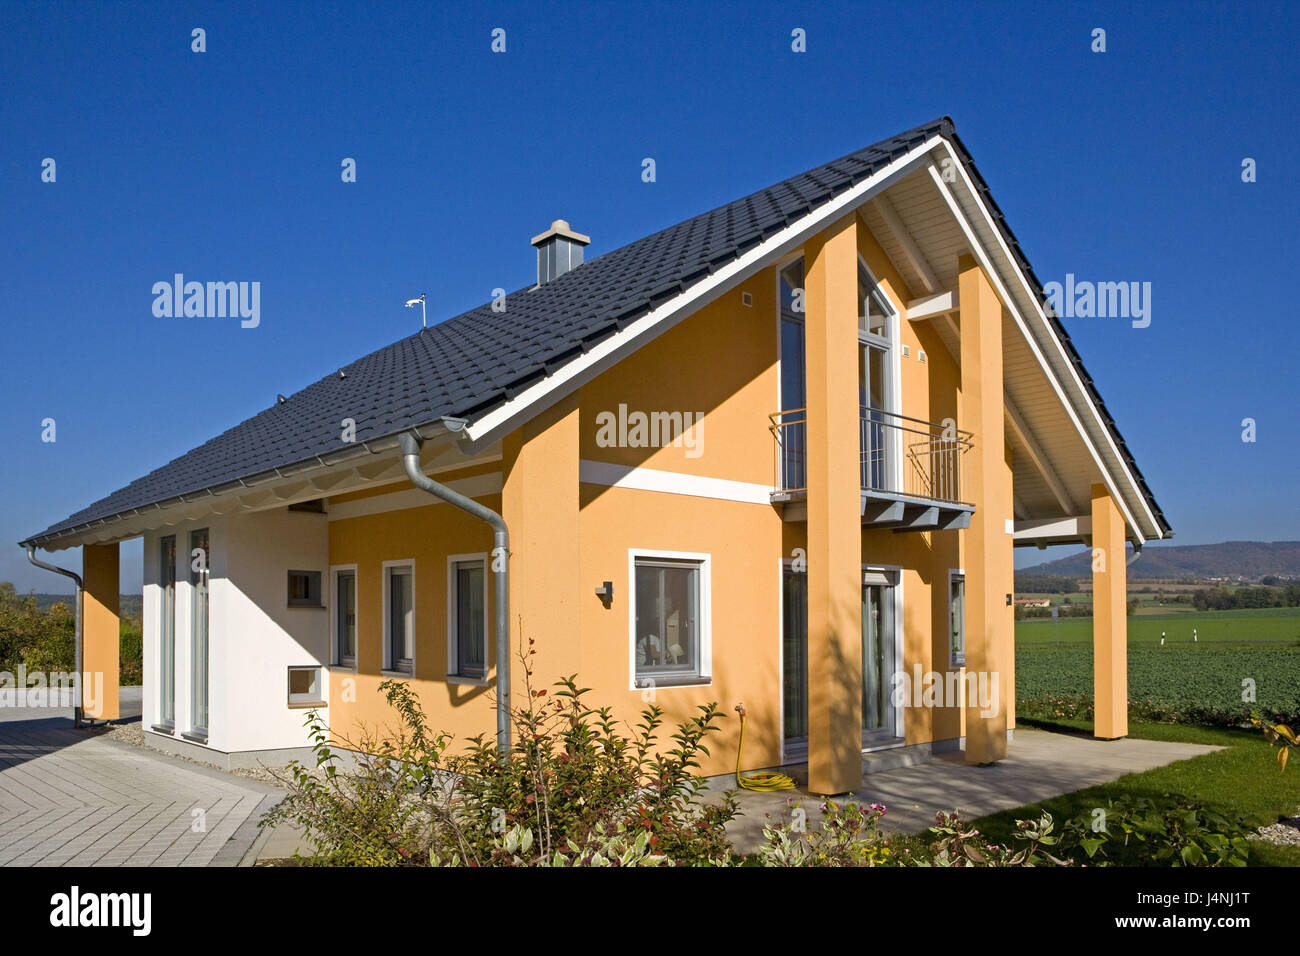 Single-family dwelling, garden, Stock Photo